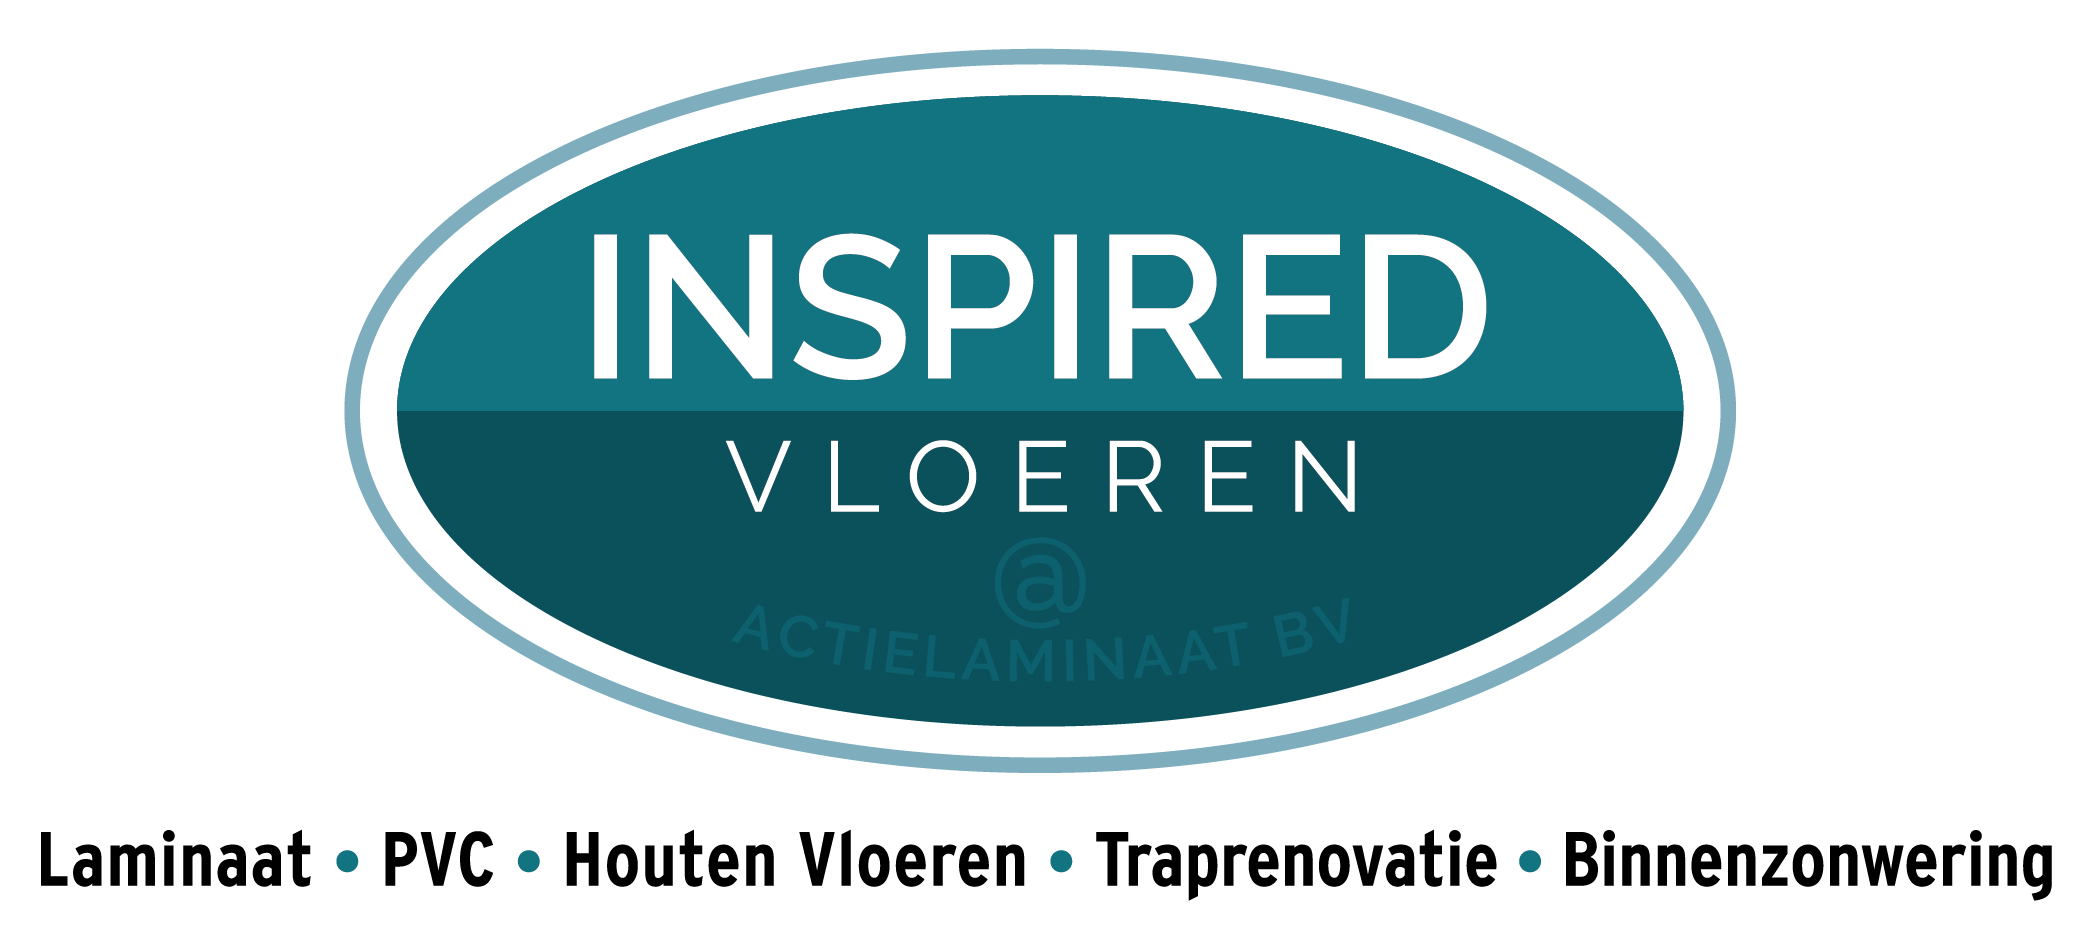 Inspired Vloeren @Actielaminaat BV